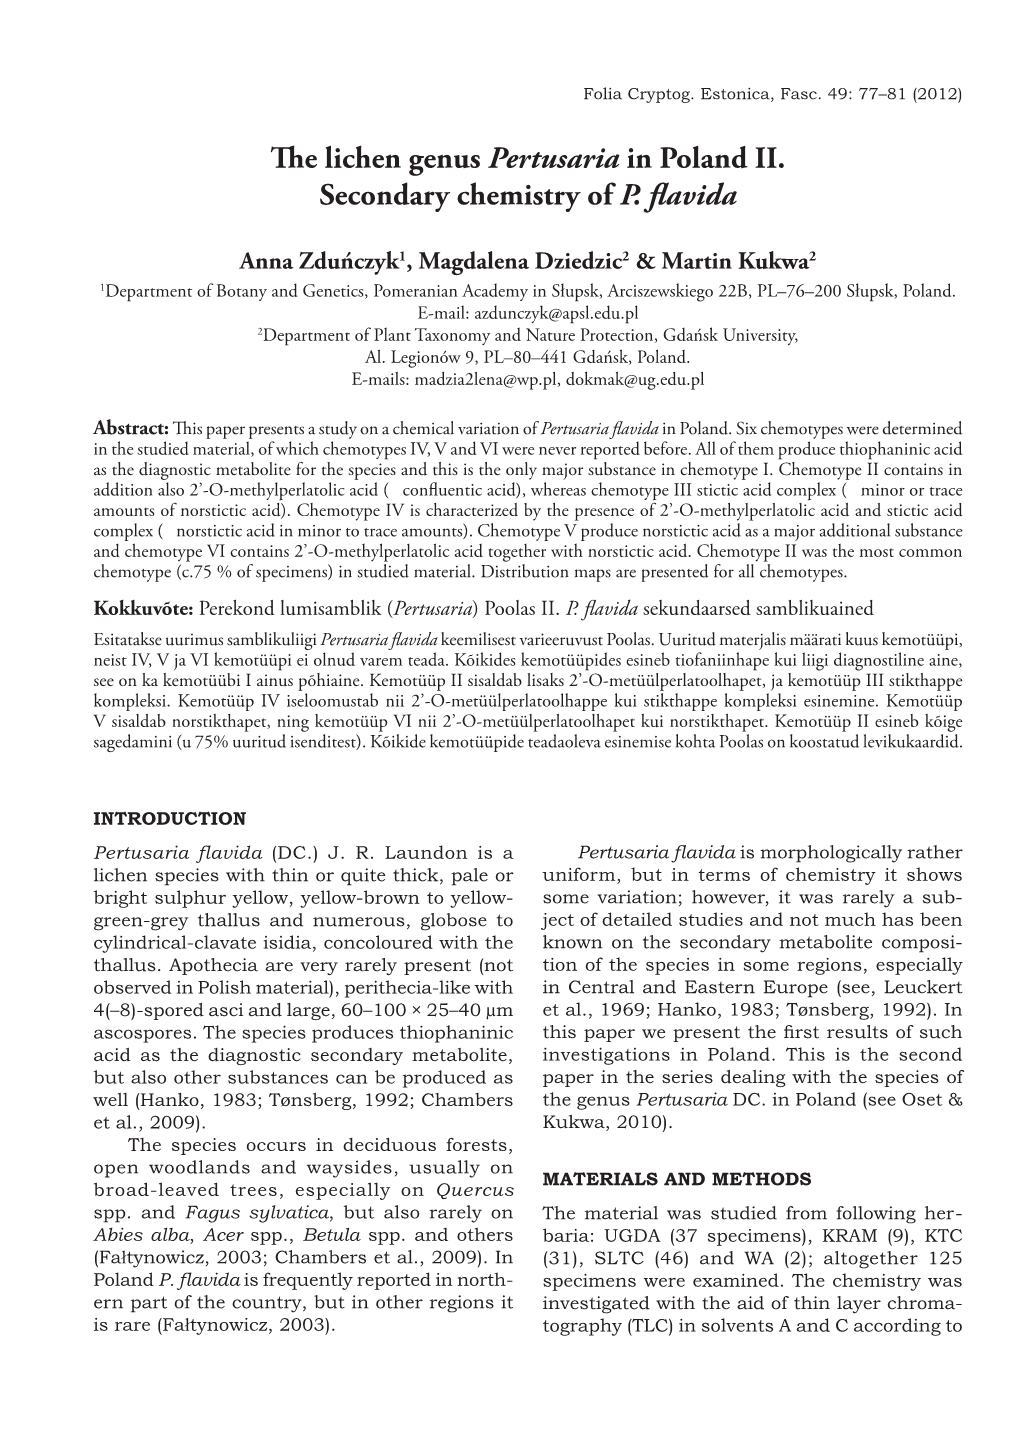 The Lichen Genus Pertusaria in Poland II. Secondary Chemistry of P. Flavida